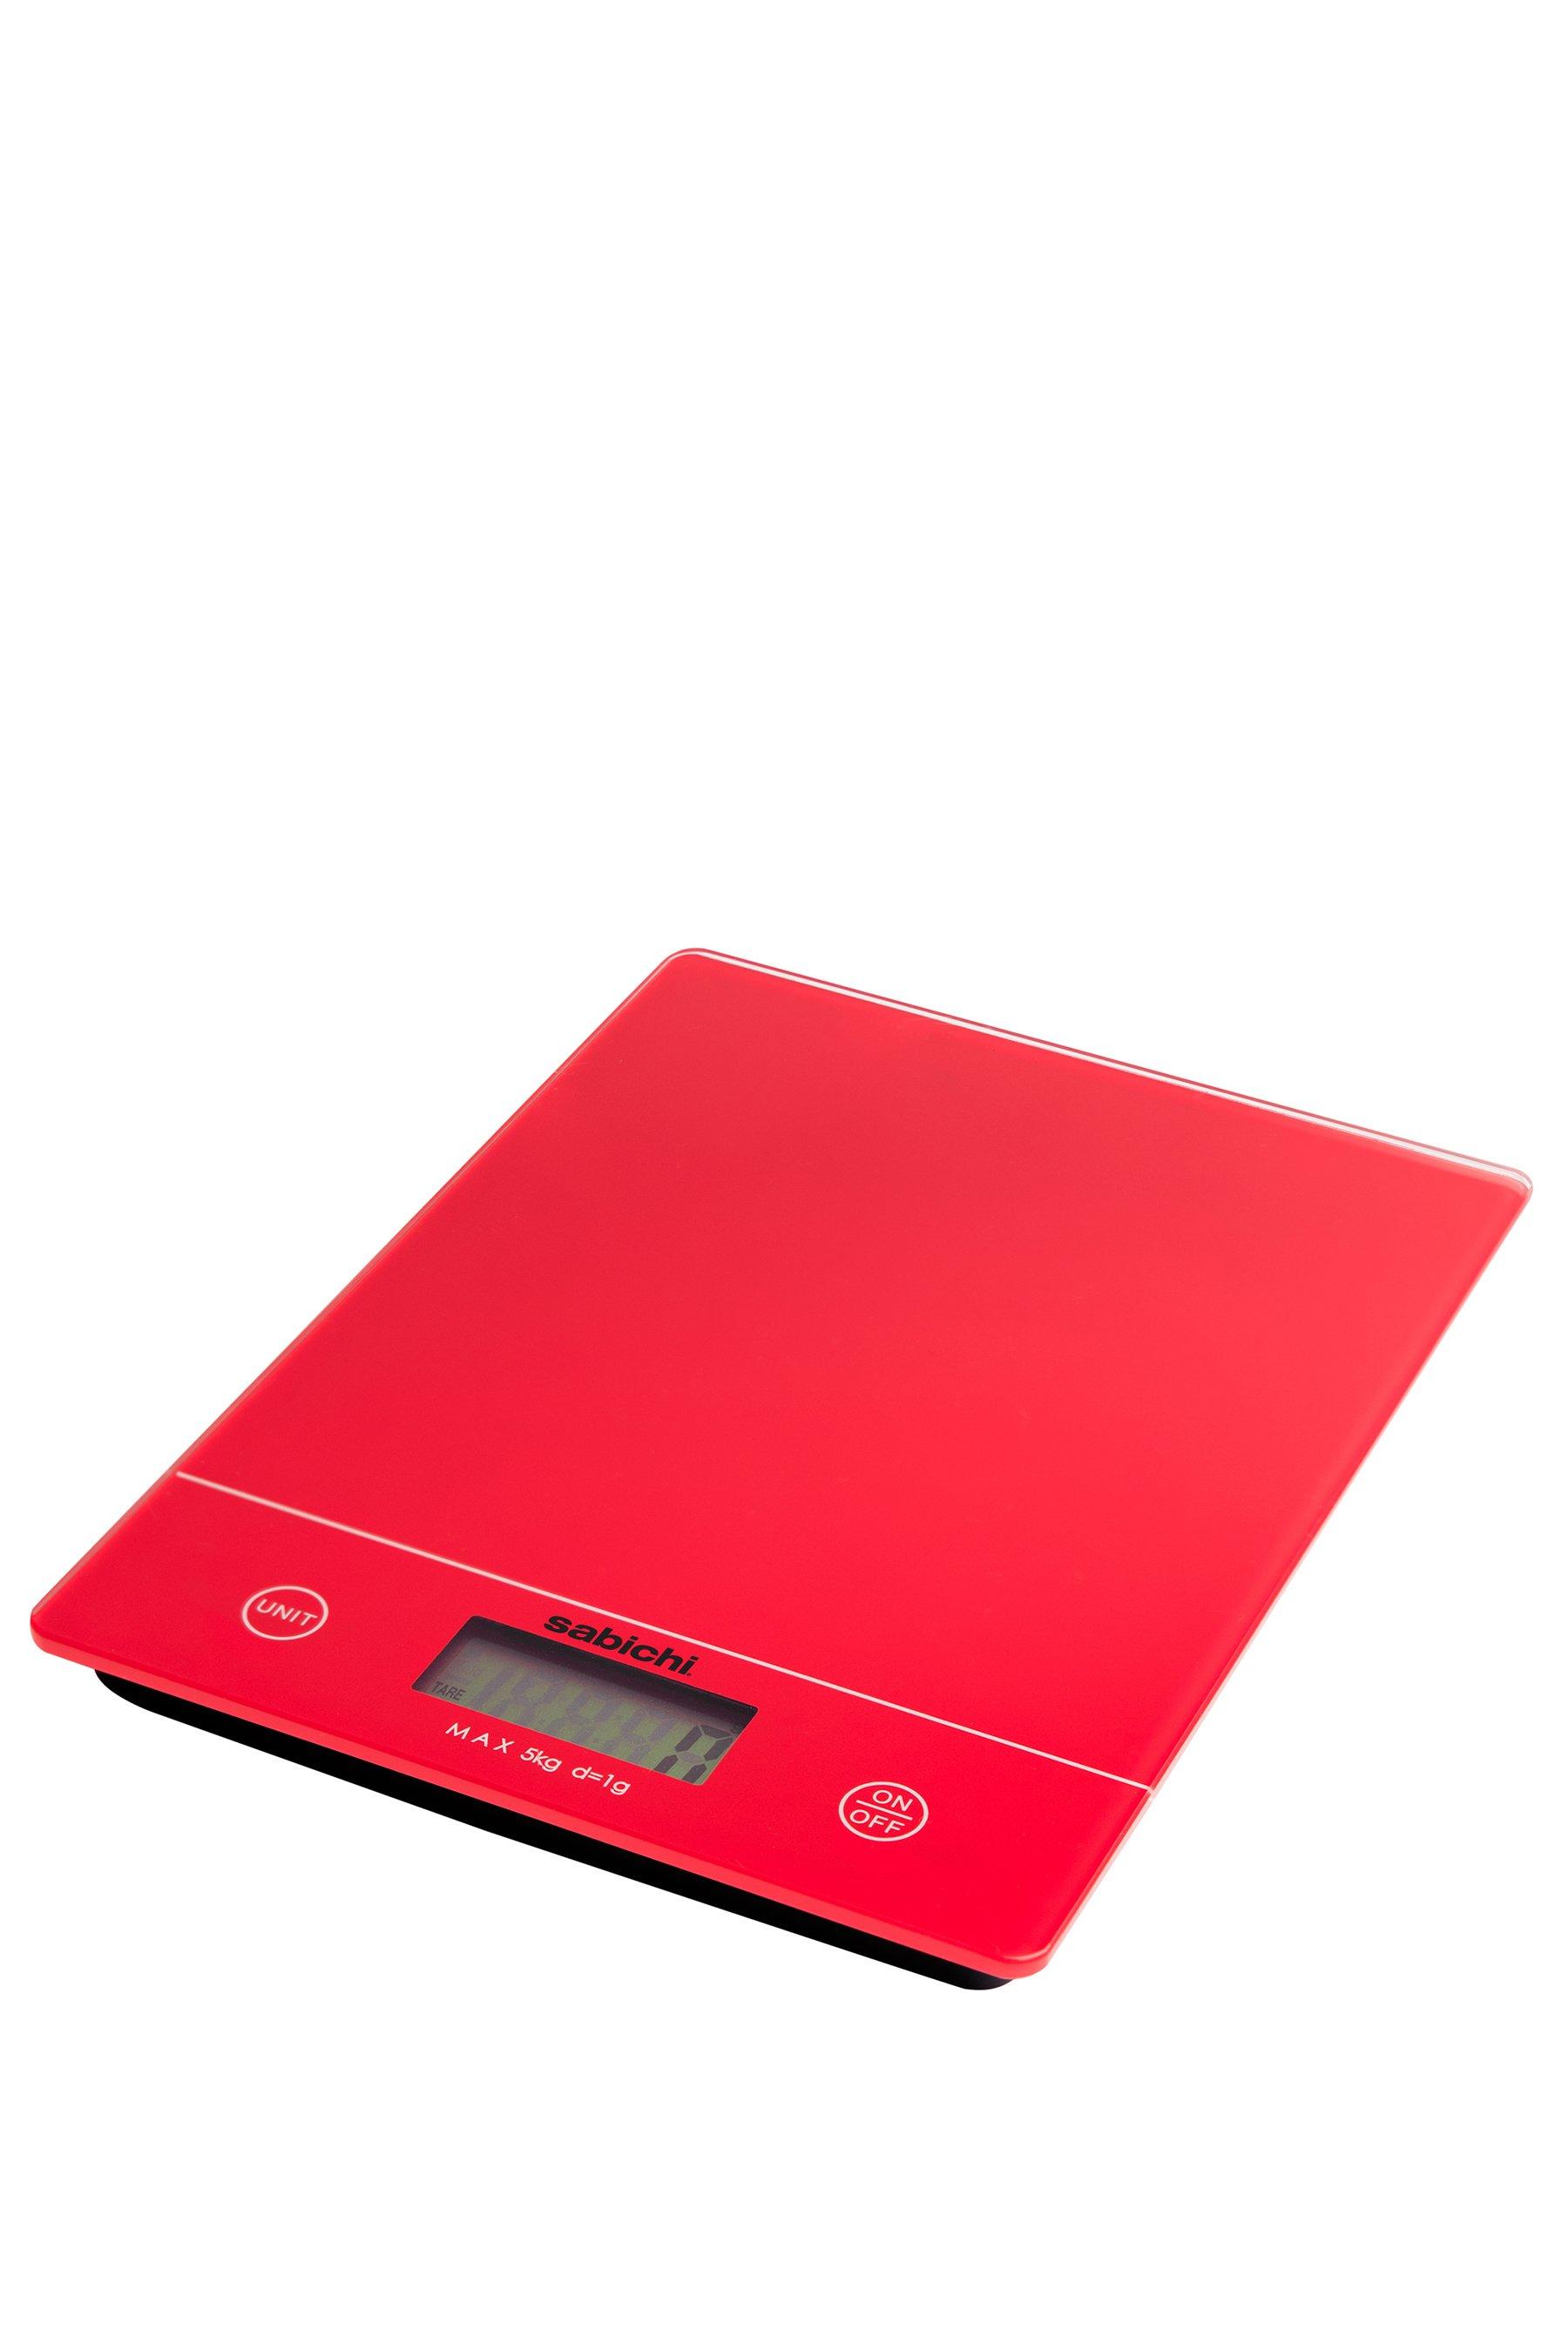 sabichi digital kitchen scales - red